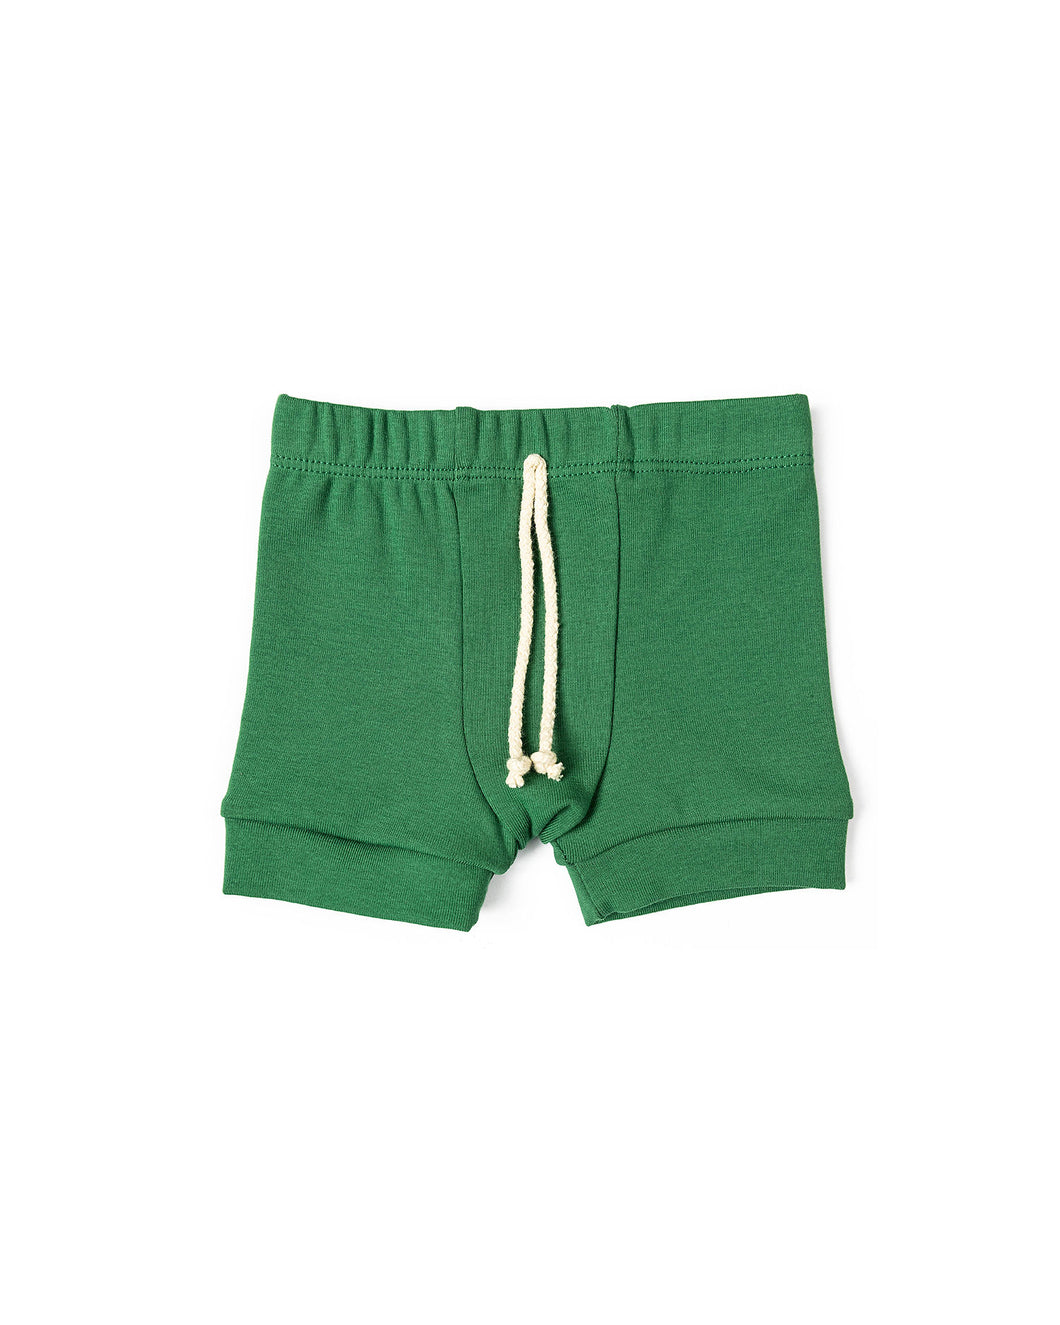 rib knit shorts - emerald